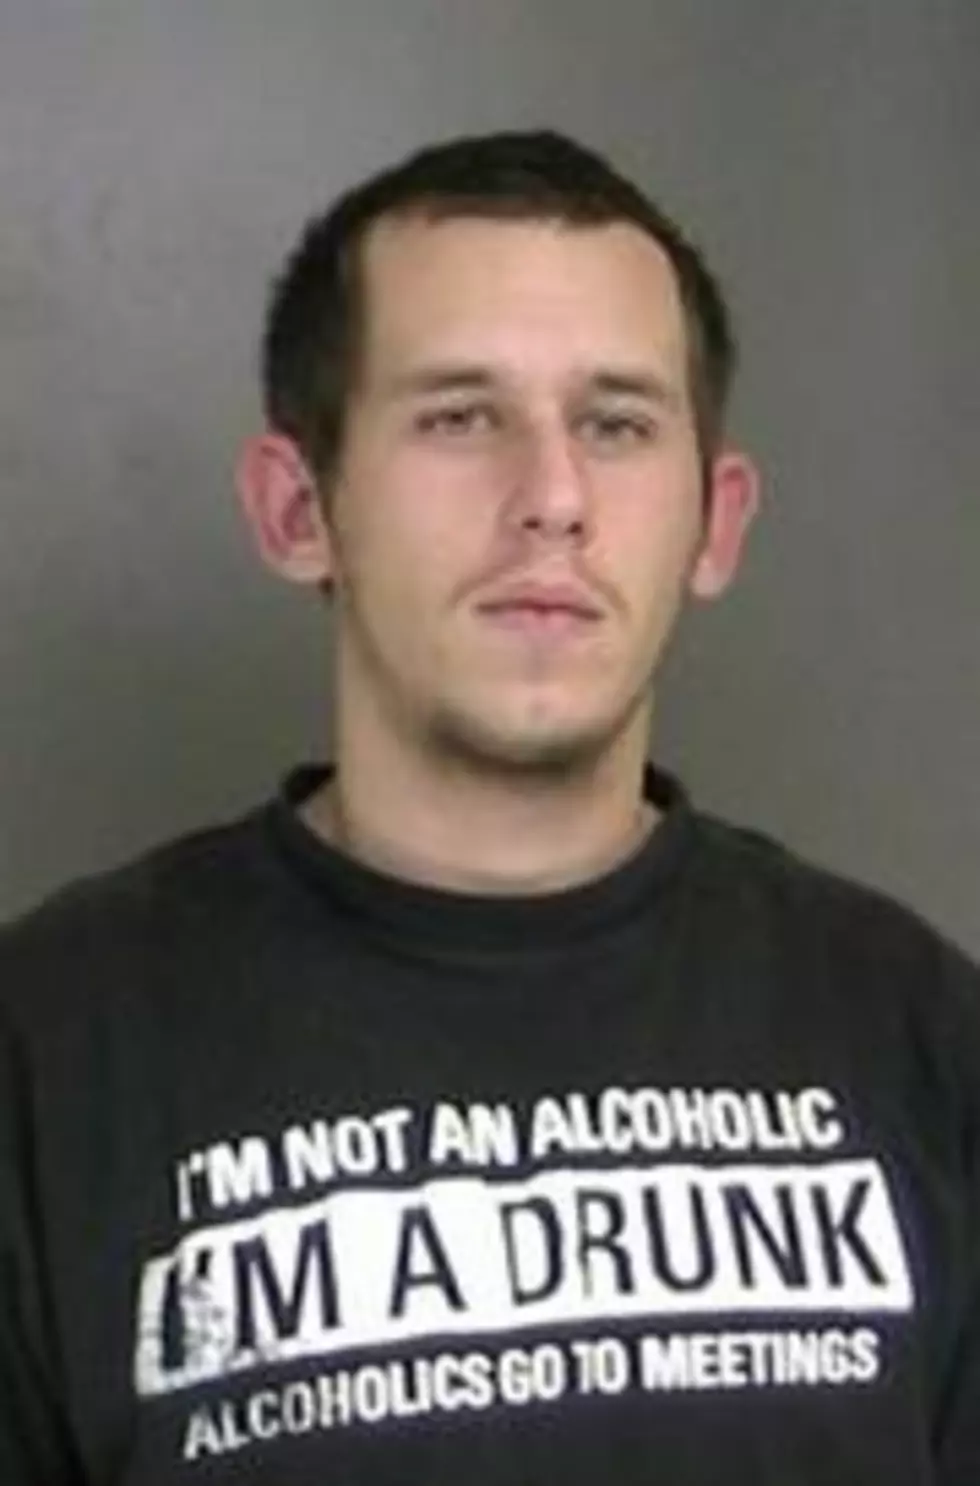 Man Wearing ‘I’m a Drunk Shirt’ Gets DUI